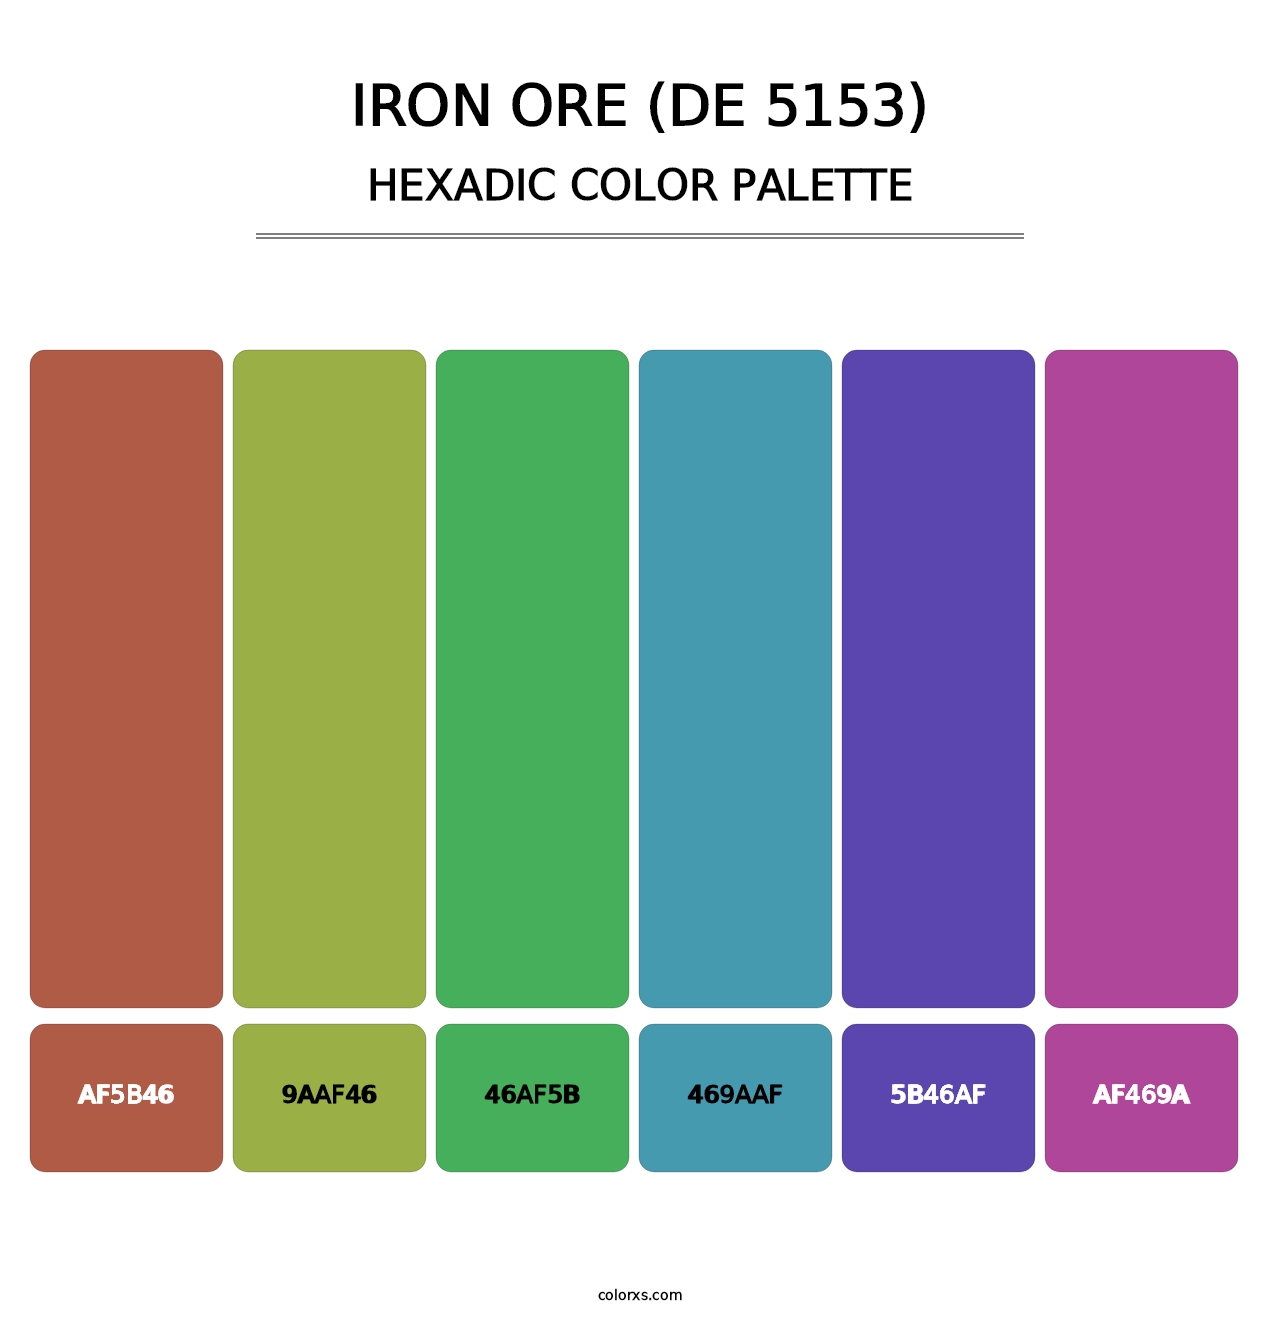 Iron Ore (DE 5153) - Hexadic Color Palette